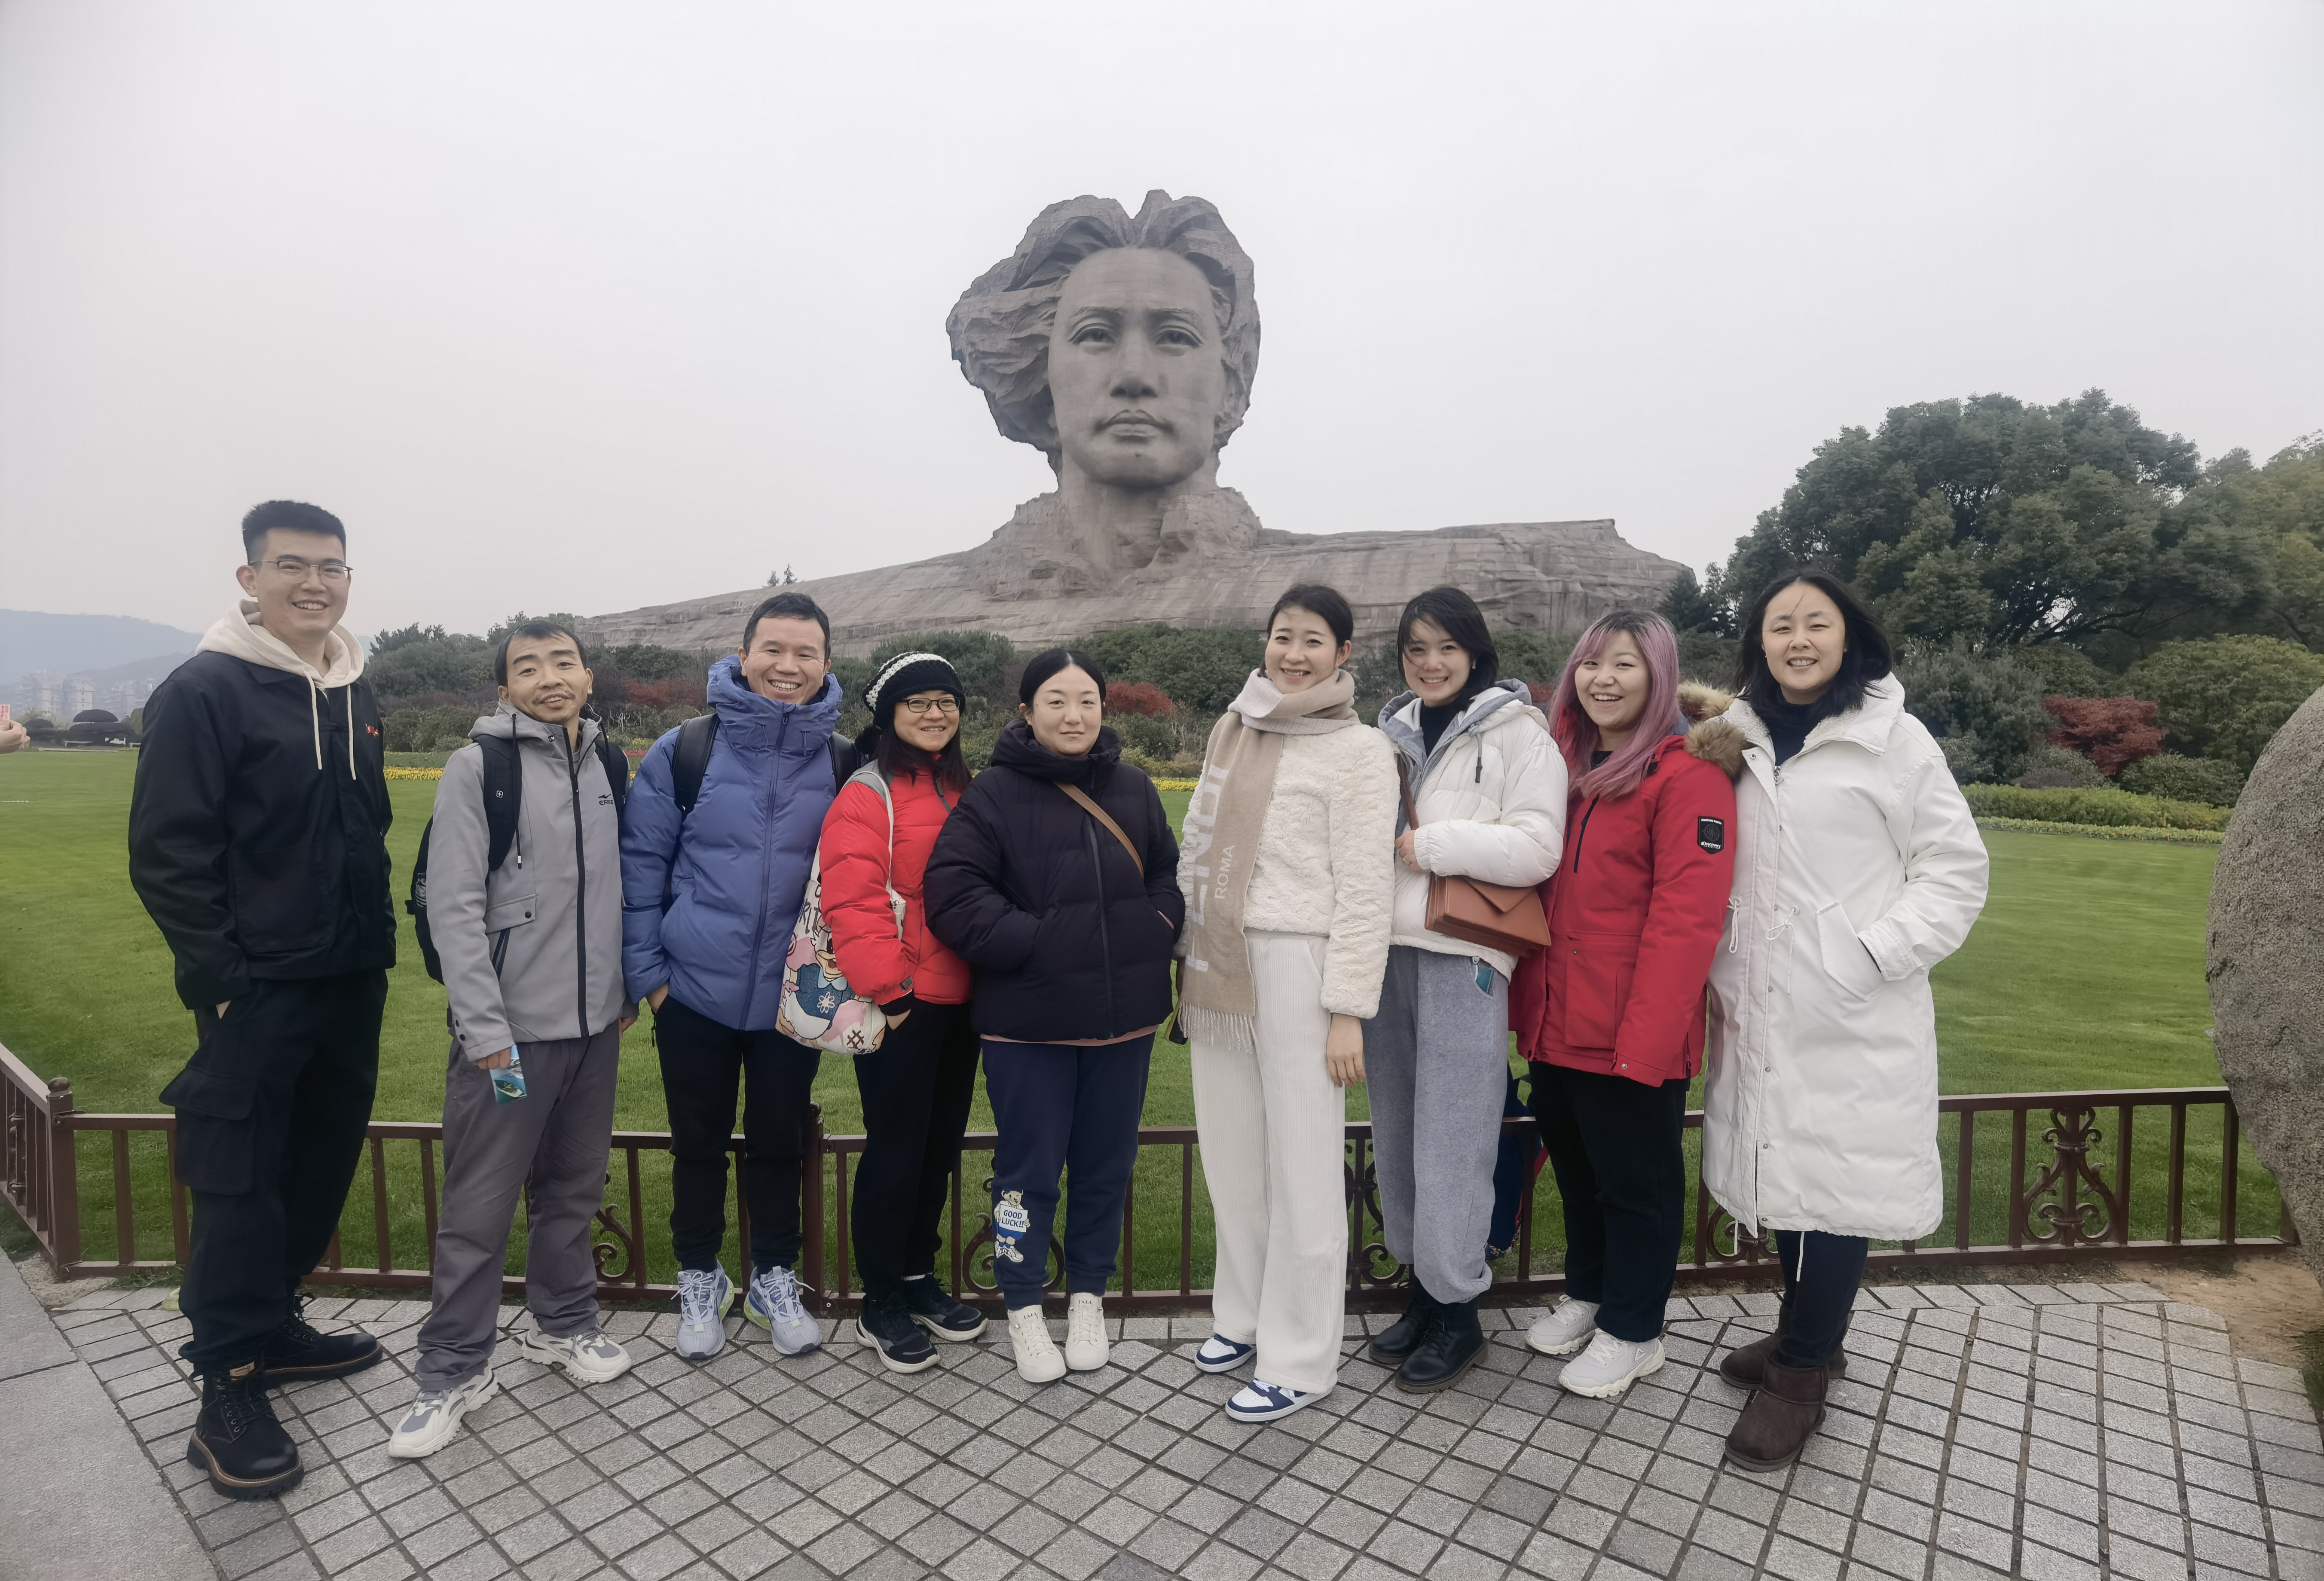 Udhëtimi Team Building i Chiswear në Changsha u përfundua me sukses